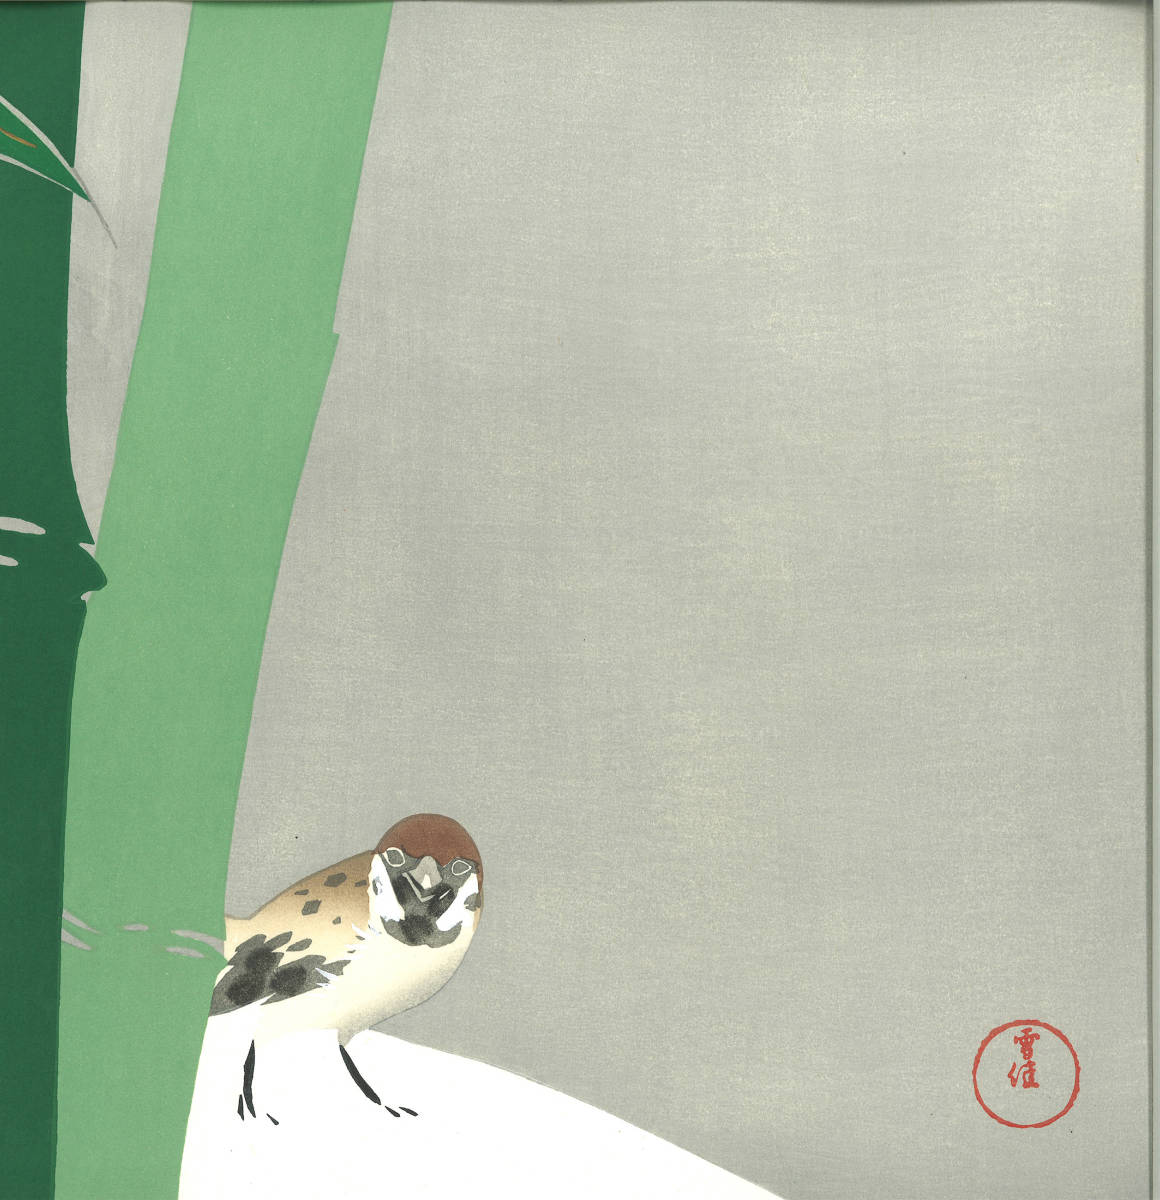 神坂雪佳 (Kamisaka Sekka) 木版画 　No.2 雪中竹 Sparrow in snow 　初版　明治期 　 京都の一流の摺師の技をご堪能くださいませ!!